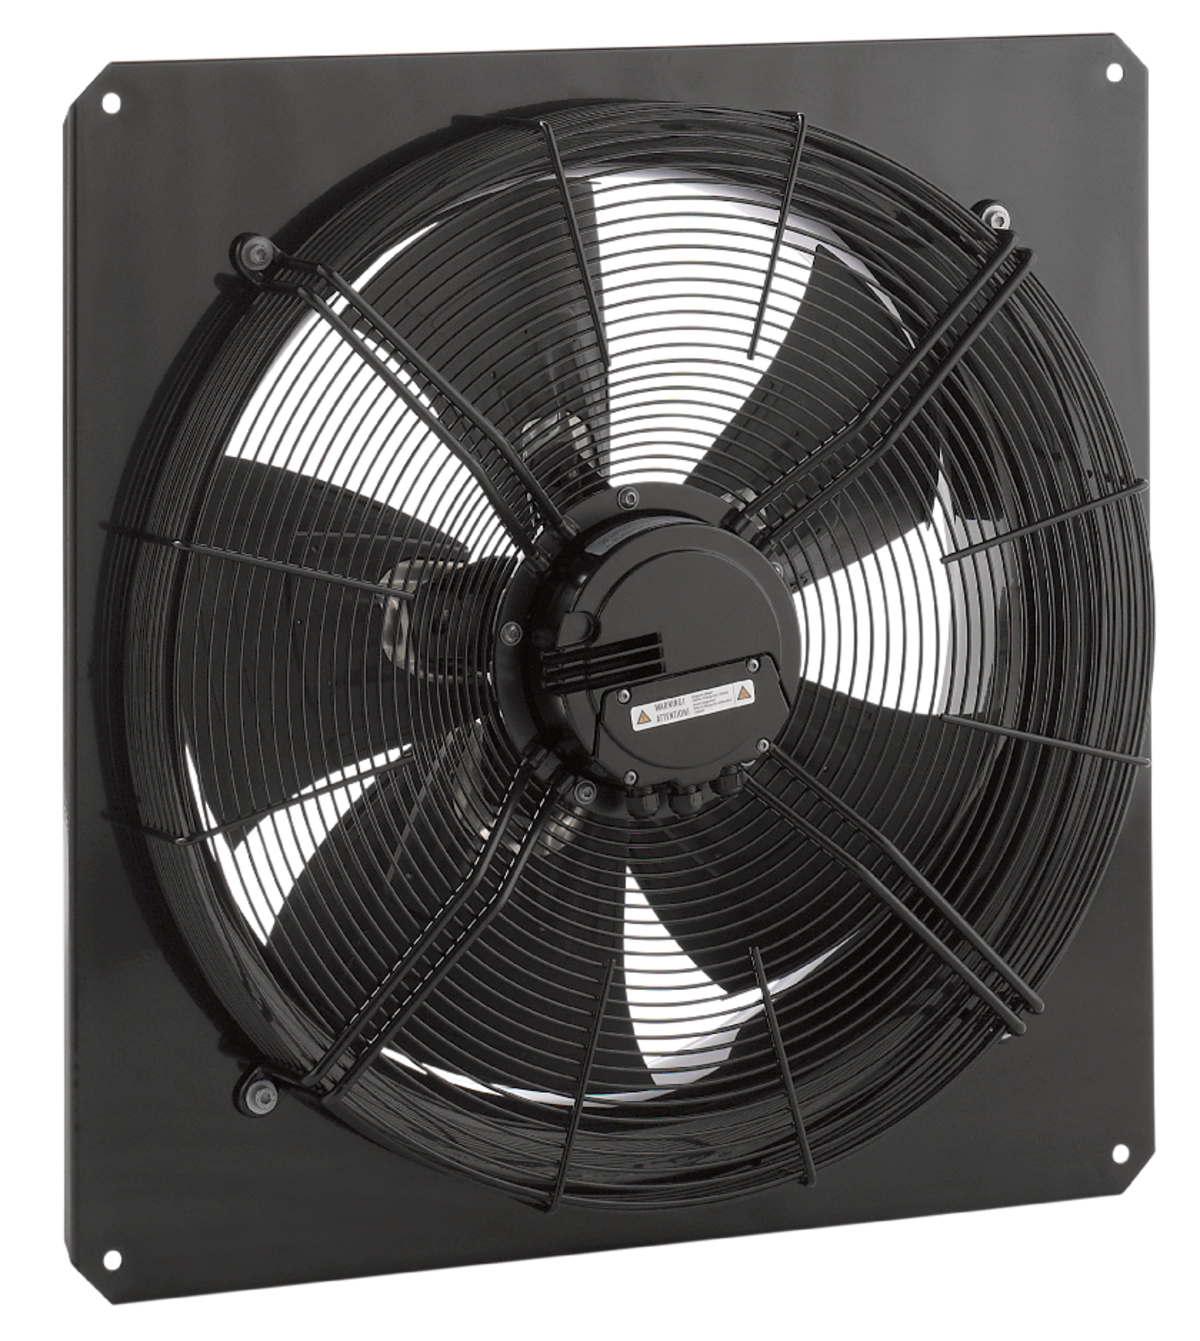 AW - Aksijalni ventilatori - Ventilatori - Proizvodi - Systemair